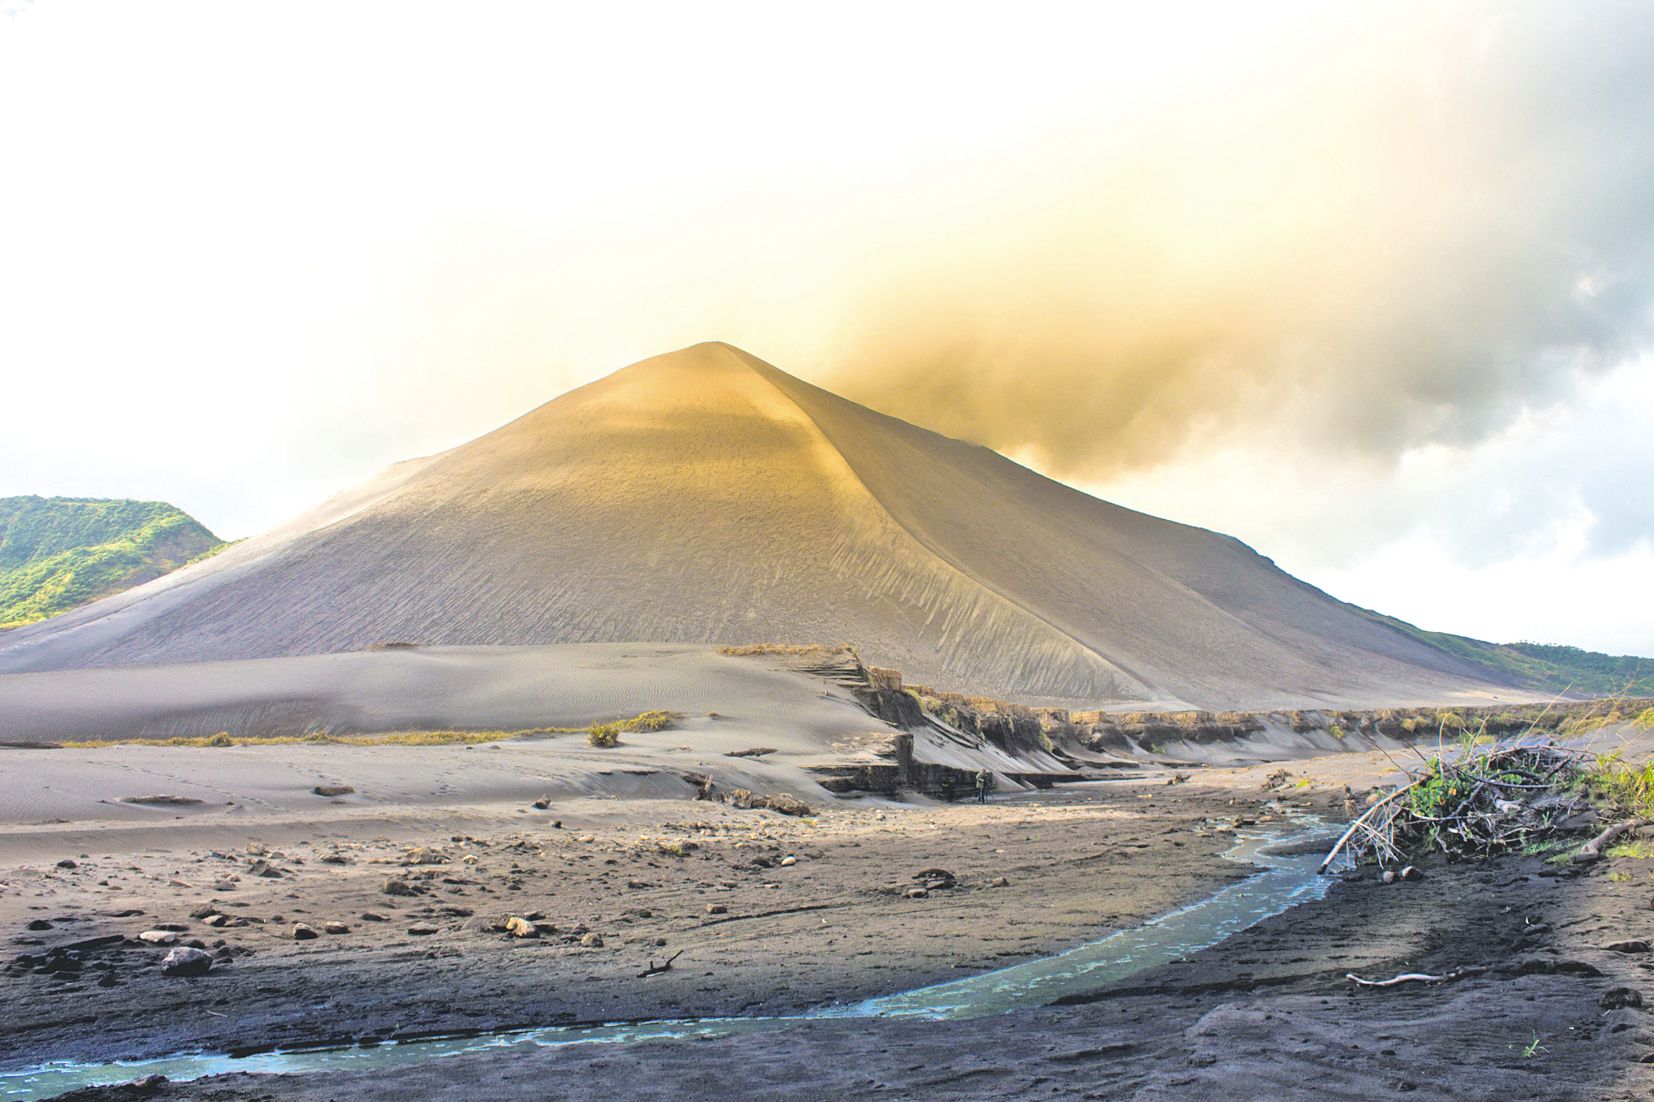 Le soir, le volcan de Tanna offre un spectacle extraordinaire où l’on voit les explosions de lave se fondre dans l’obscurité.